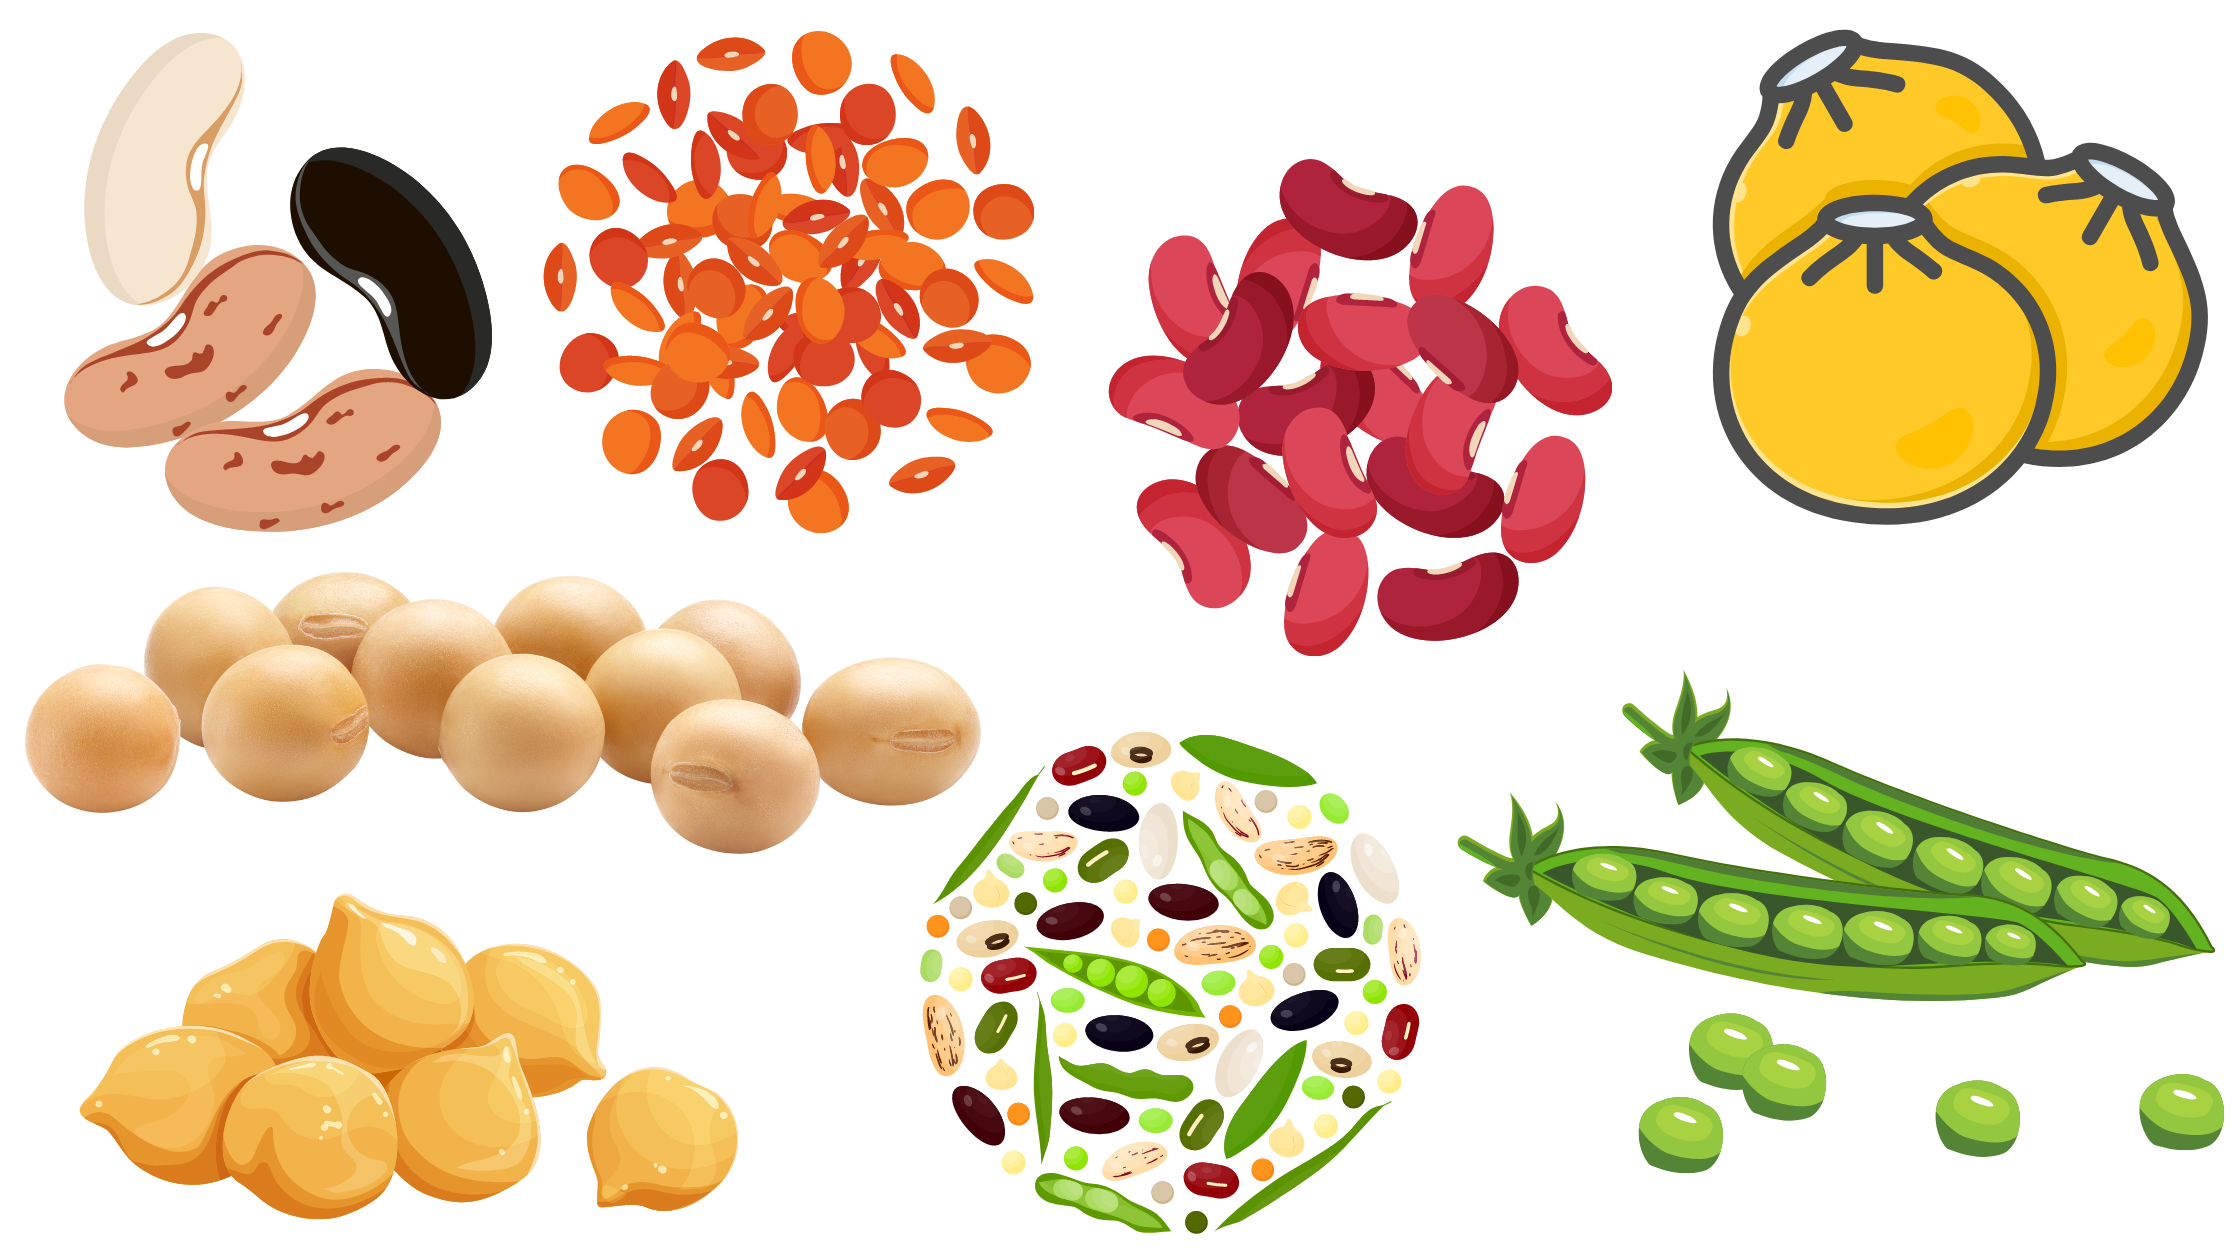 esempi-di-legumi-secchi-come-i-fagioli-pinto_-borlotti_-rossi_-ceci_-piselli_-soia-e-lenticchie